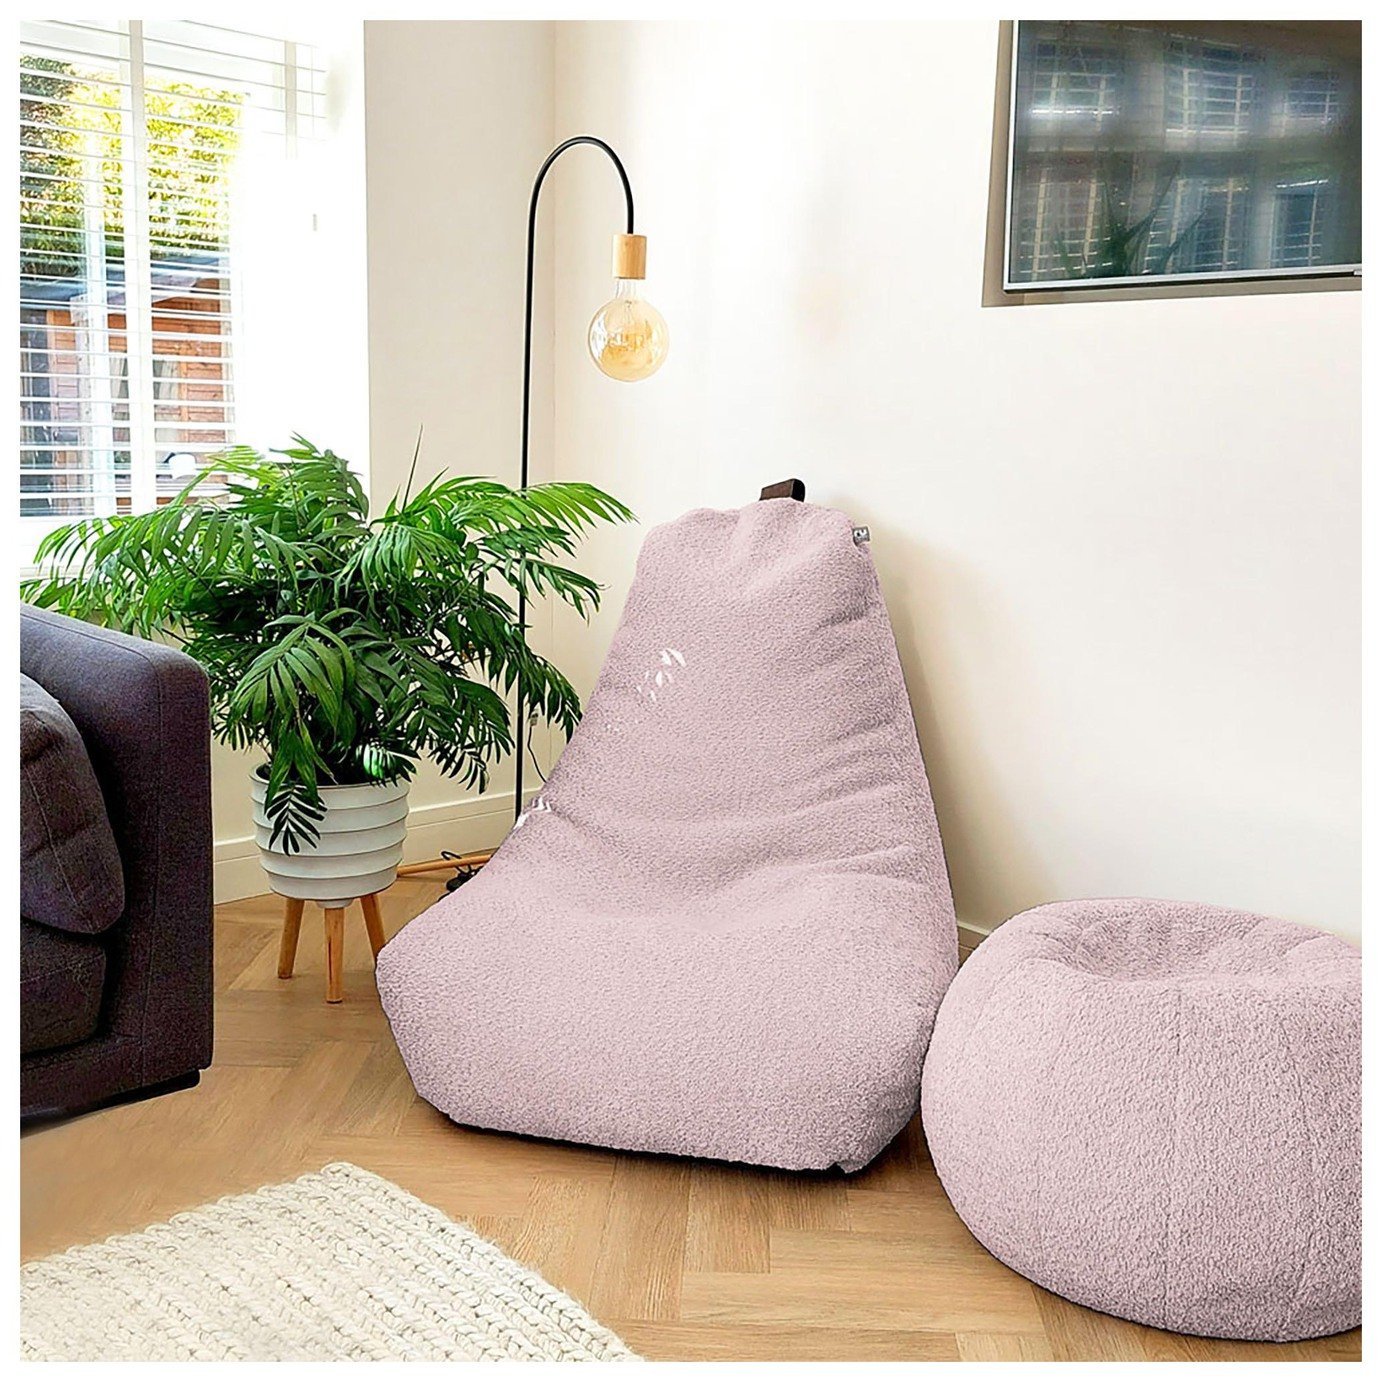 rucomfy Fabric Snug Bean Bag Chair - Blush Pink